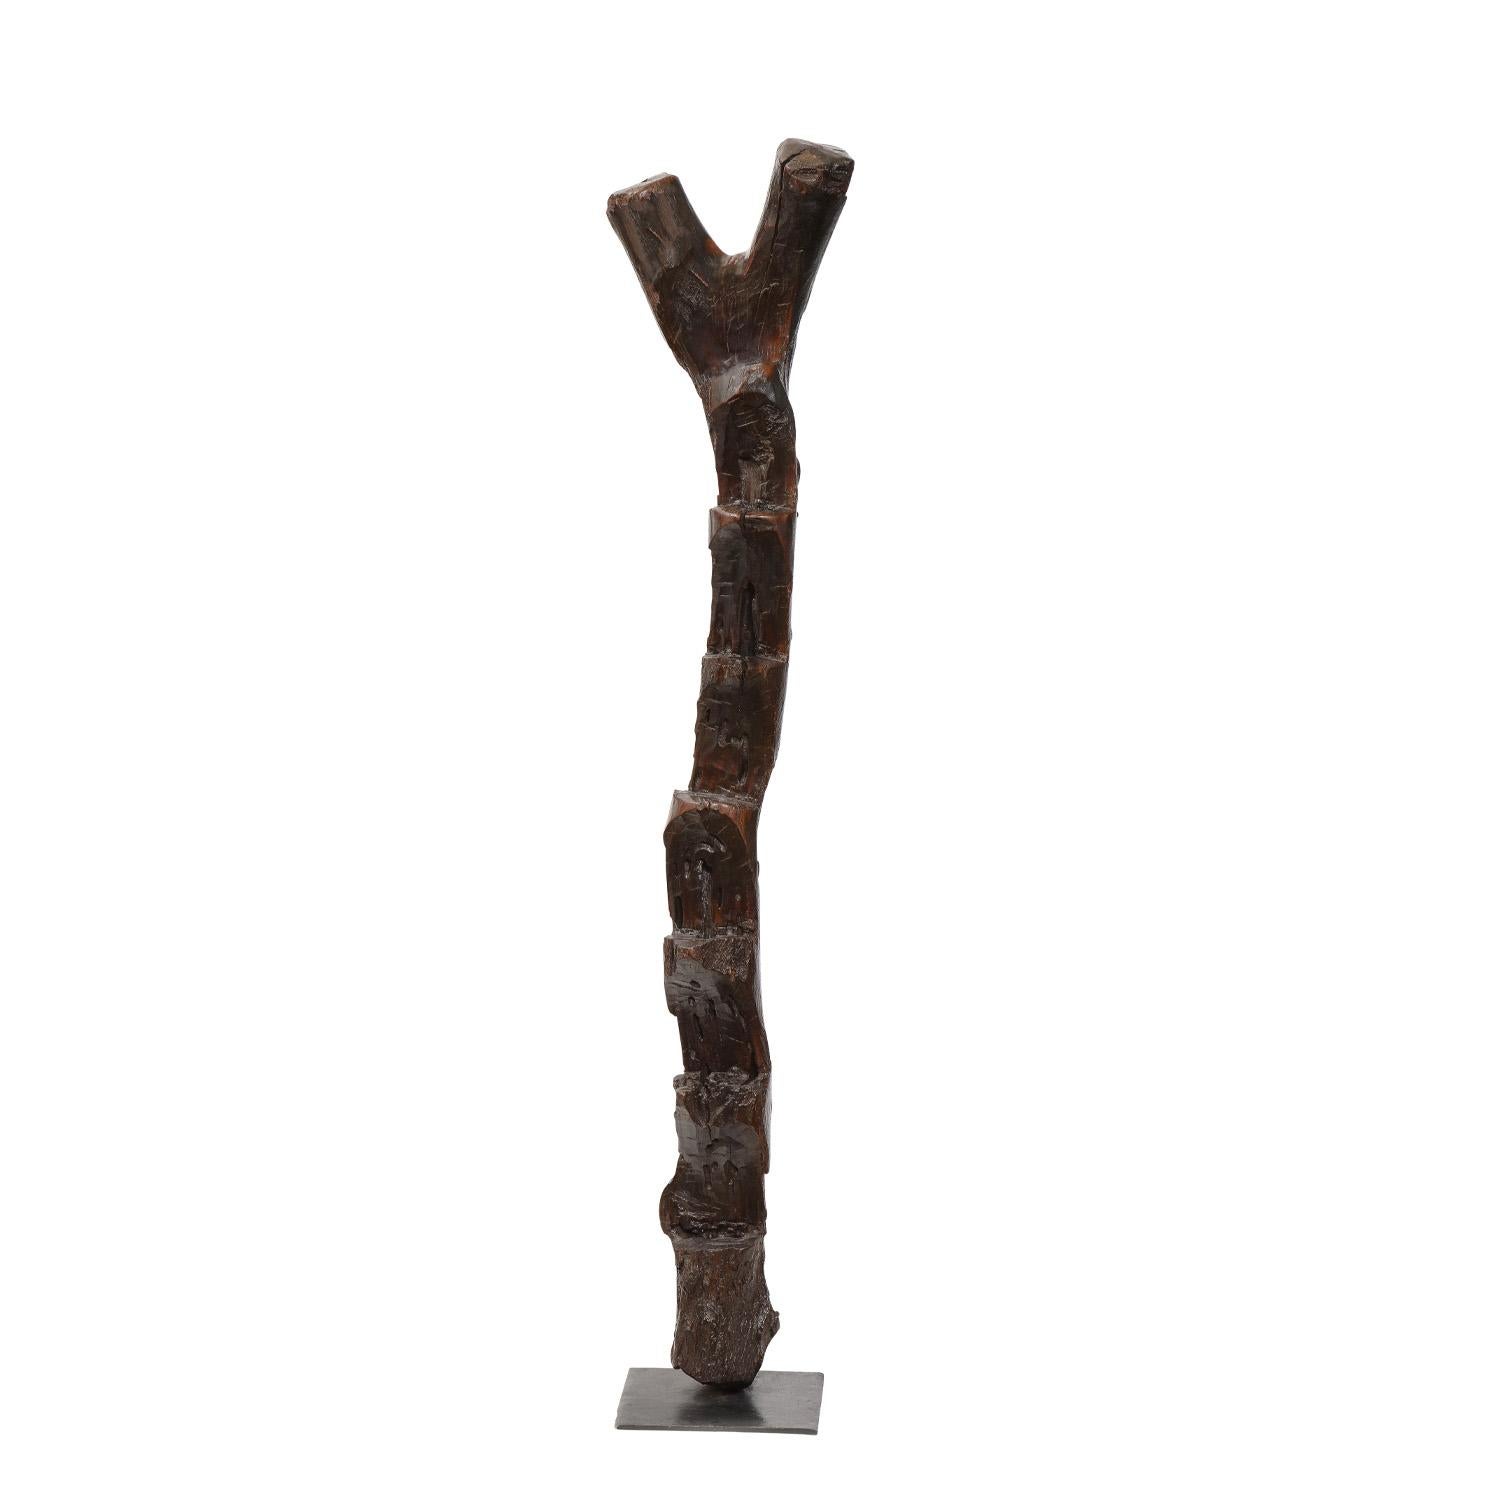 Échelle en bois sculptée à la main sur une base carrée noire, utilisée à l'origine pour accéder aux résidences à plusieurs étages construites dans les falaises par la tribu Dogon, Mali, 20e siècle. Il s'agit d'une décoration étonnante pour n'importe